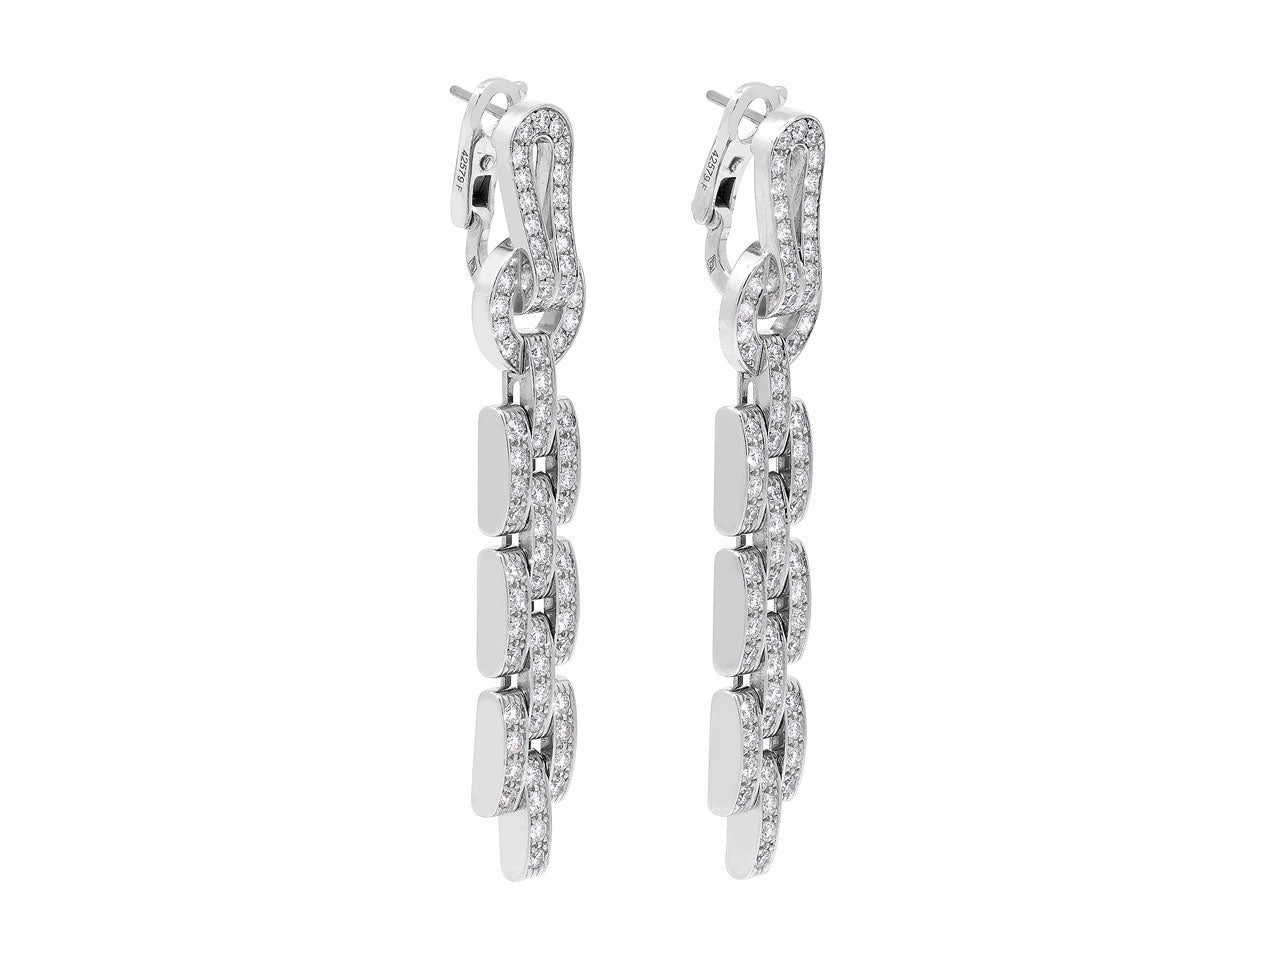 Cartier 'Agrafe' Diamond Earrings in 18K White Gold